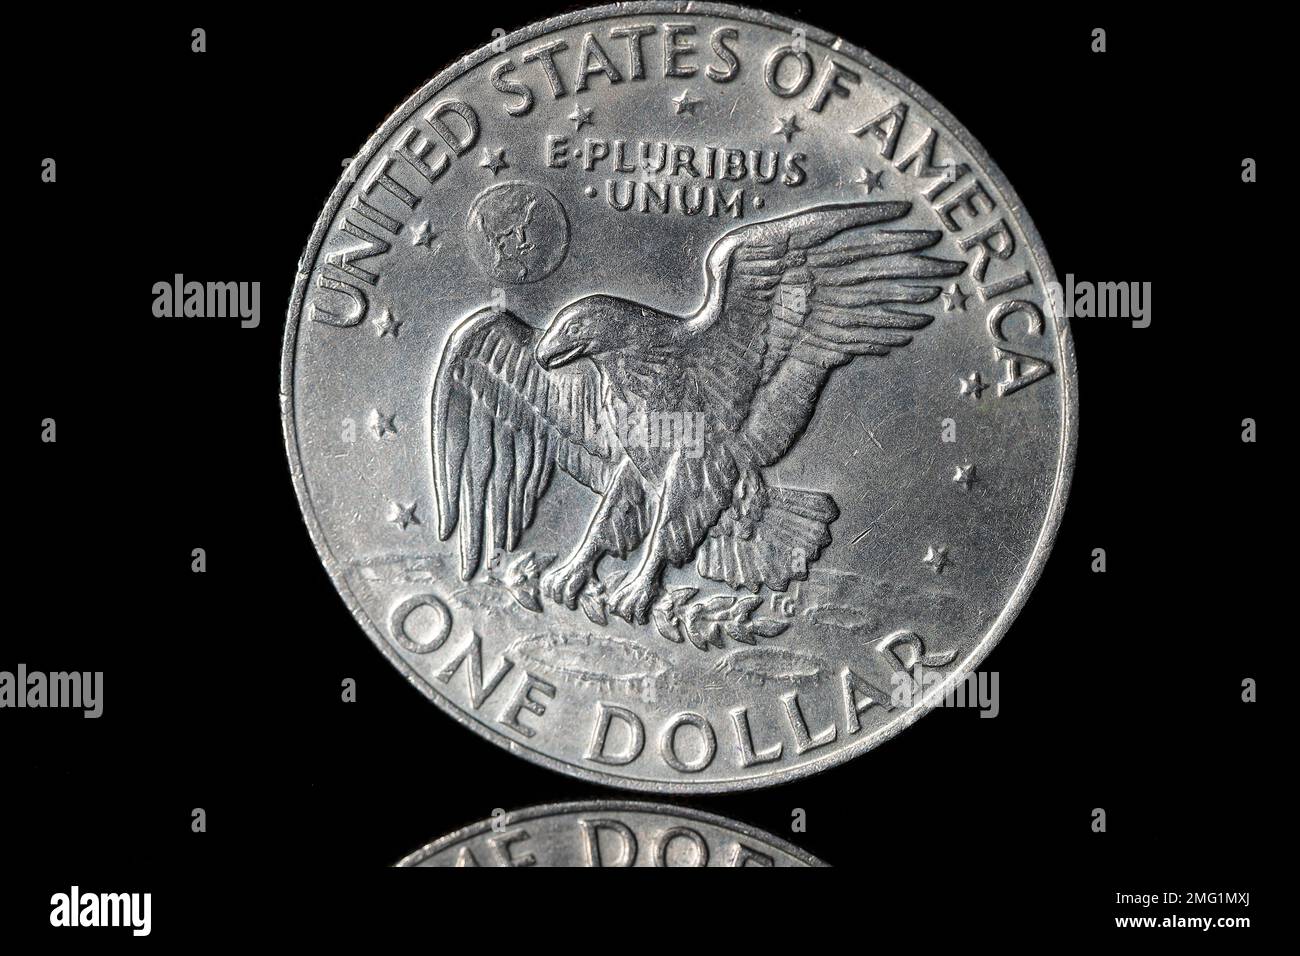 Les États-Unis d'Amérique inversent le côté d'une pièce de 1974 $1 dollars. Le portrait du président Eisenhower se trouve du côté opposé Banque D'Images